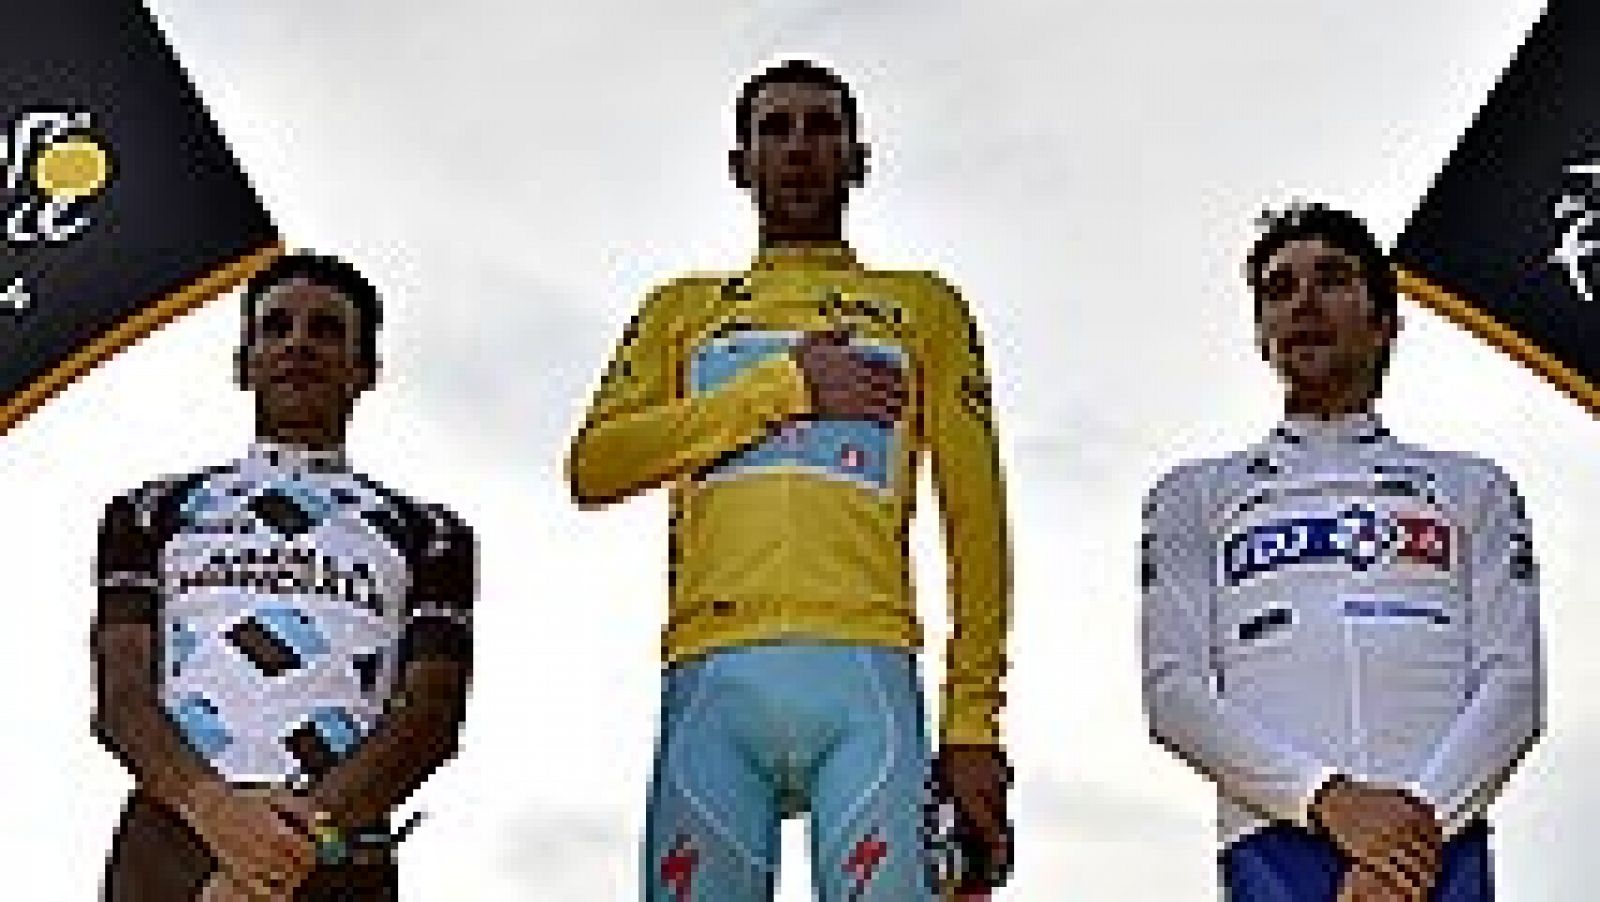 El italiano Vincenzo Nibali se convirtió hoy en tres veces grande nada más atravesar la meta de París, ya que pasa a la historia como uno de los seis ciclistas ganadores de Tour, Giro y Vuelta, en una jornada festiva, de homenaje al "Tiburón de Mesin